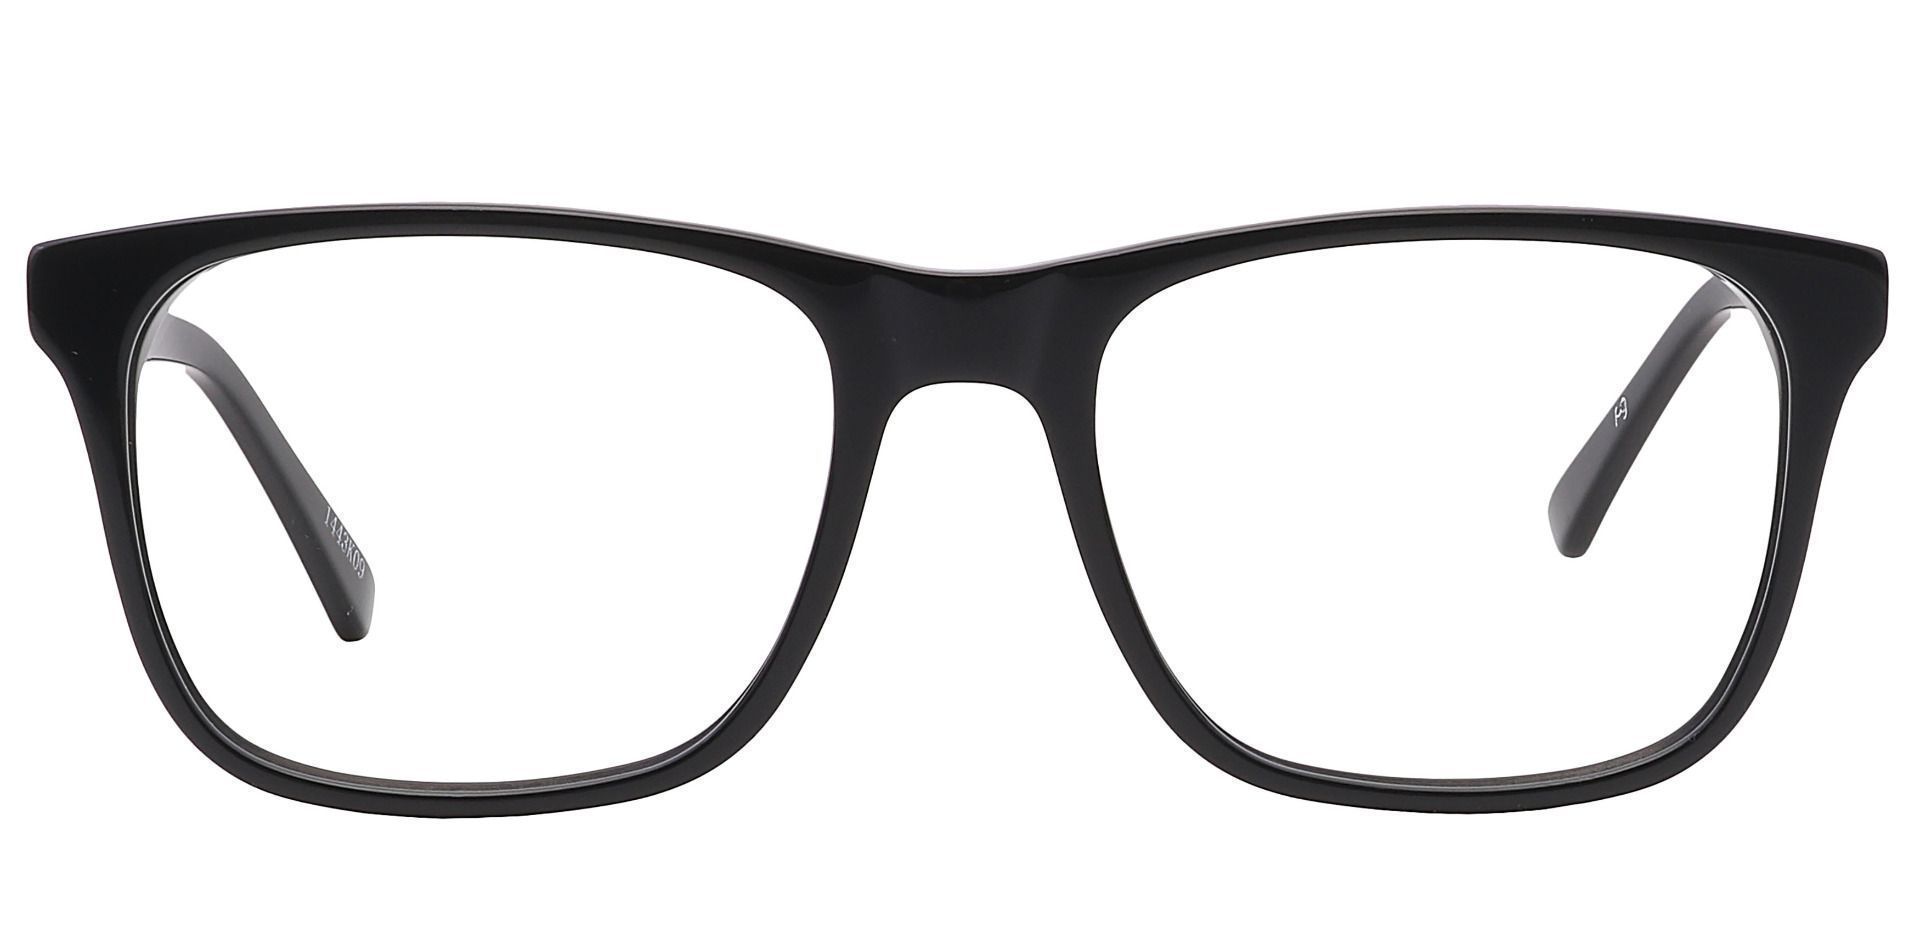 Cantina Square Reading Glasses - Black